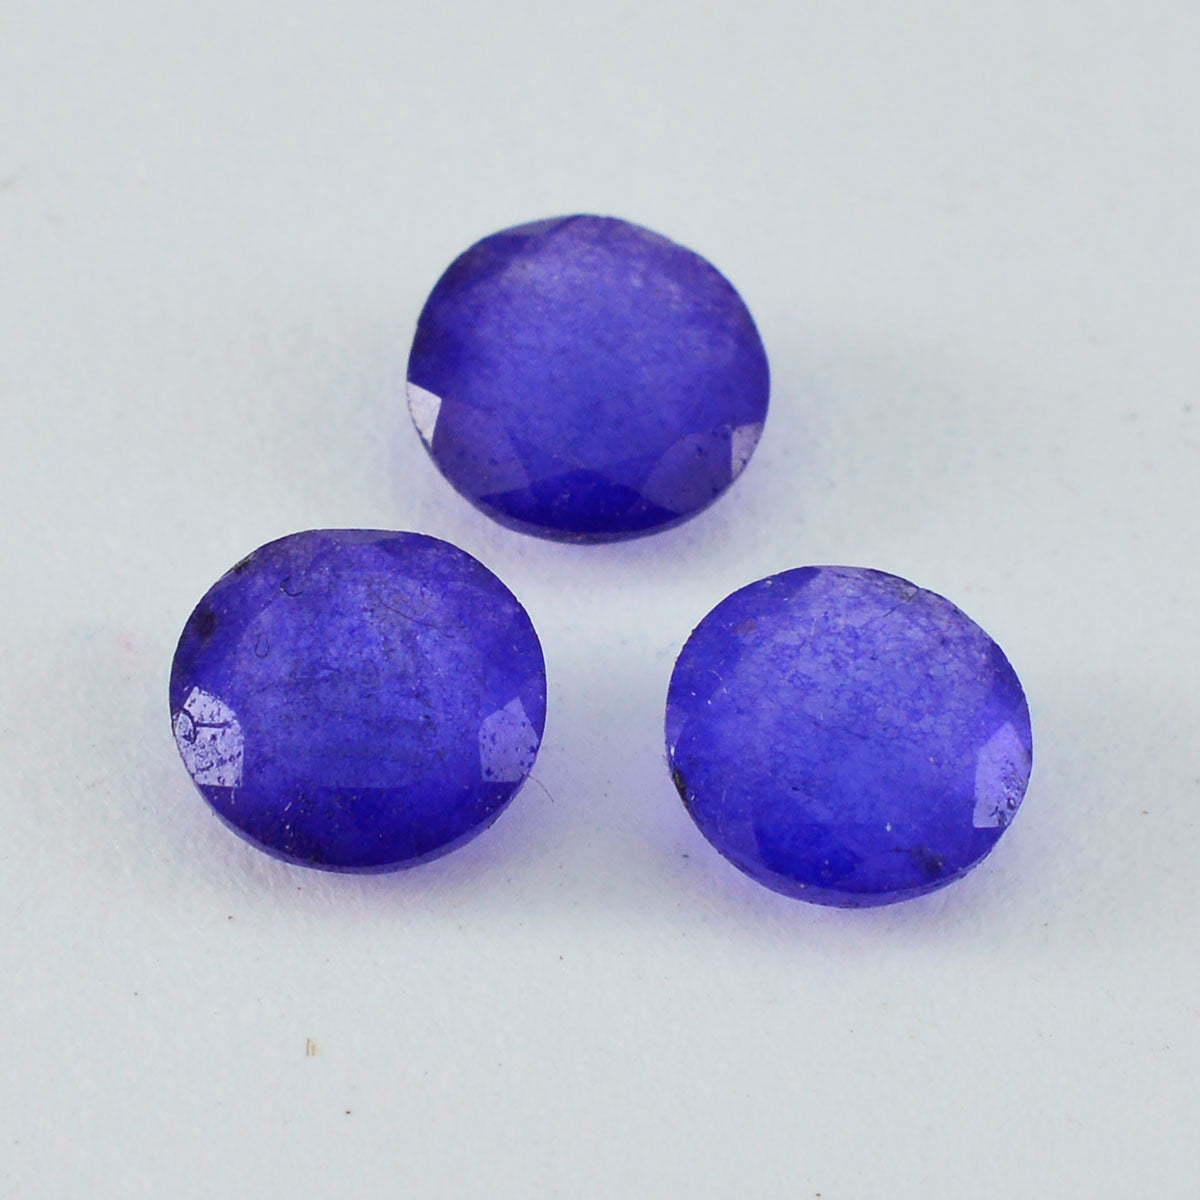 Riyogems 1 pieza de jaspe azul auténtico facetado de 0.394 x 0.394 in, forma redonda, calidad AAA, piedra preciosa suelta